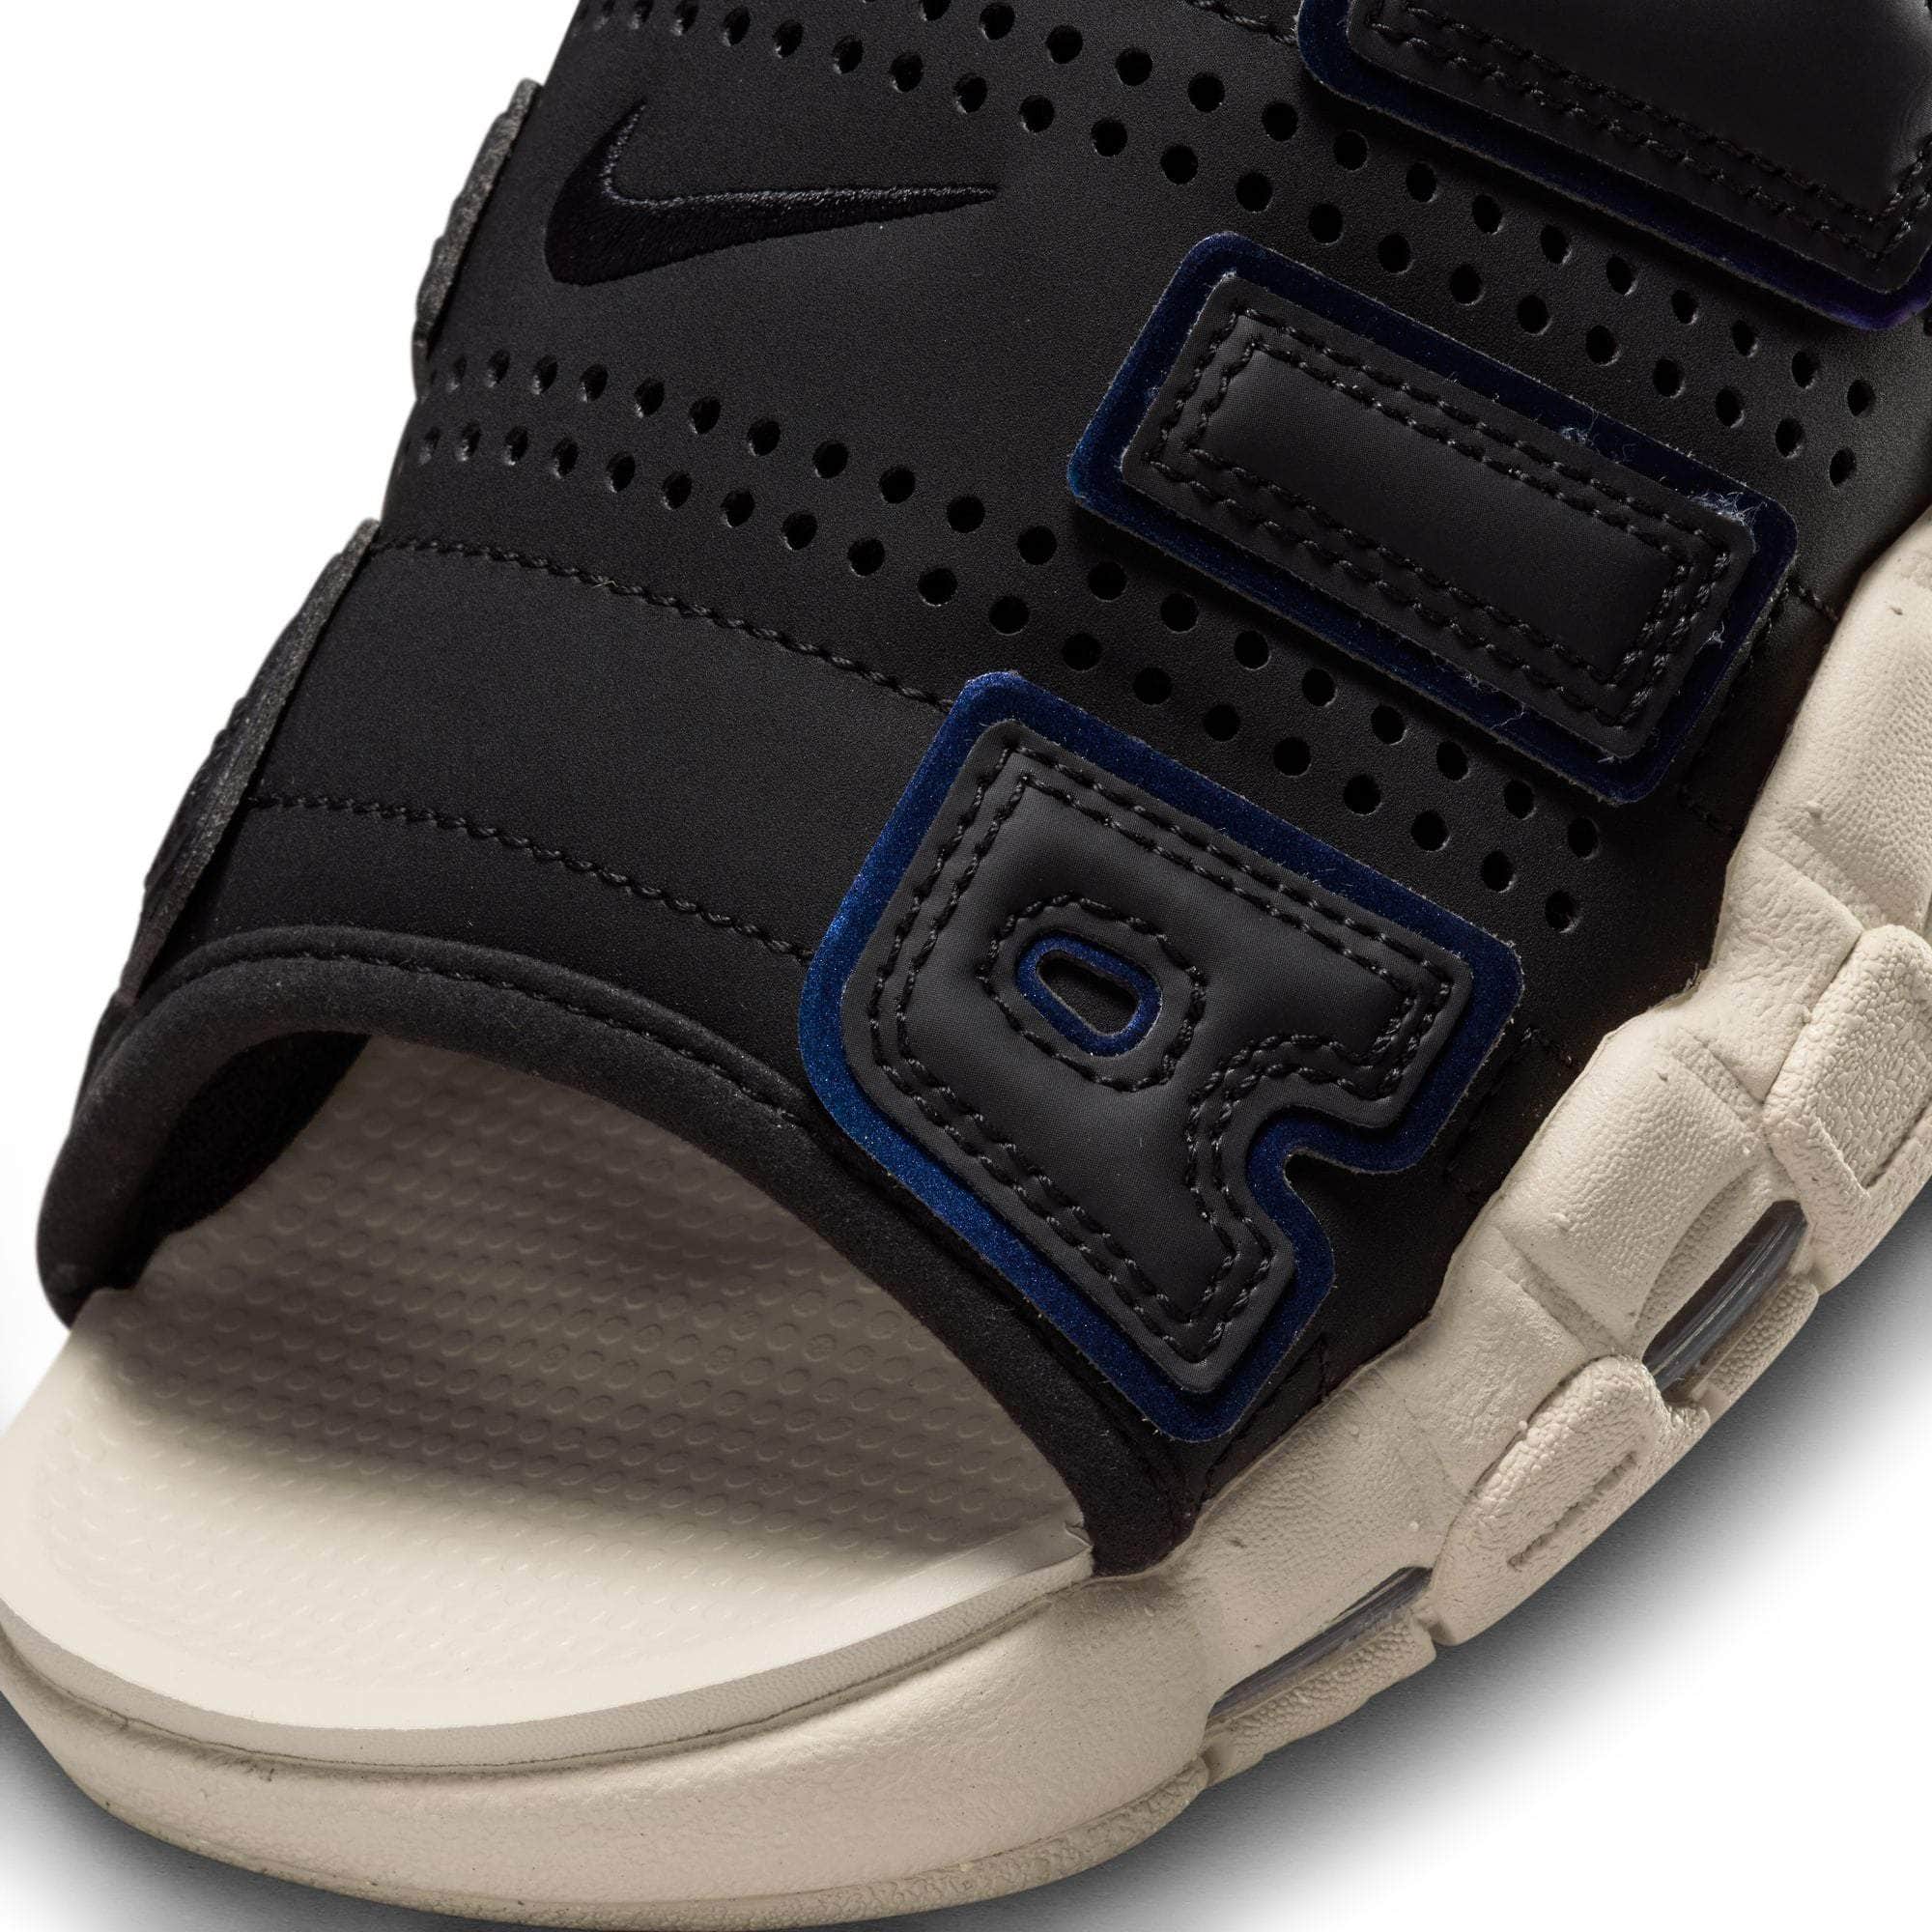 NIKE FOOTWEAR Nike Air More Uptempo 'Black Sanddrift Iridescent' - Men's